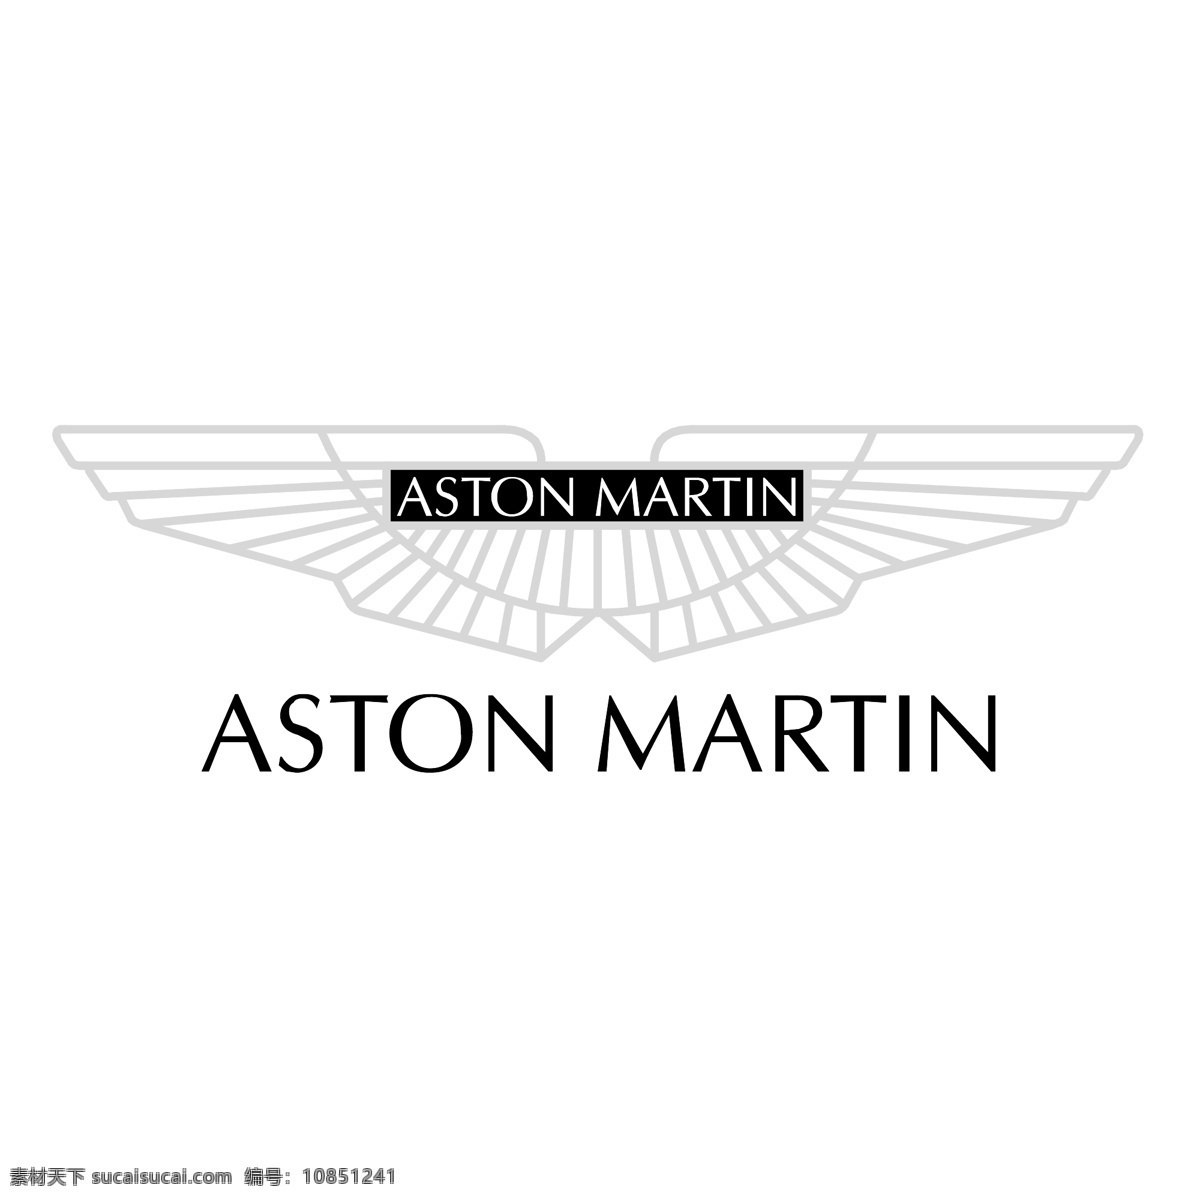 阿斯顿马丁 aston martin 标识标志图标 企业 logo 标志 世界 汽车行业 大全 acura 讴歌 系列 矢量图库